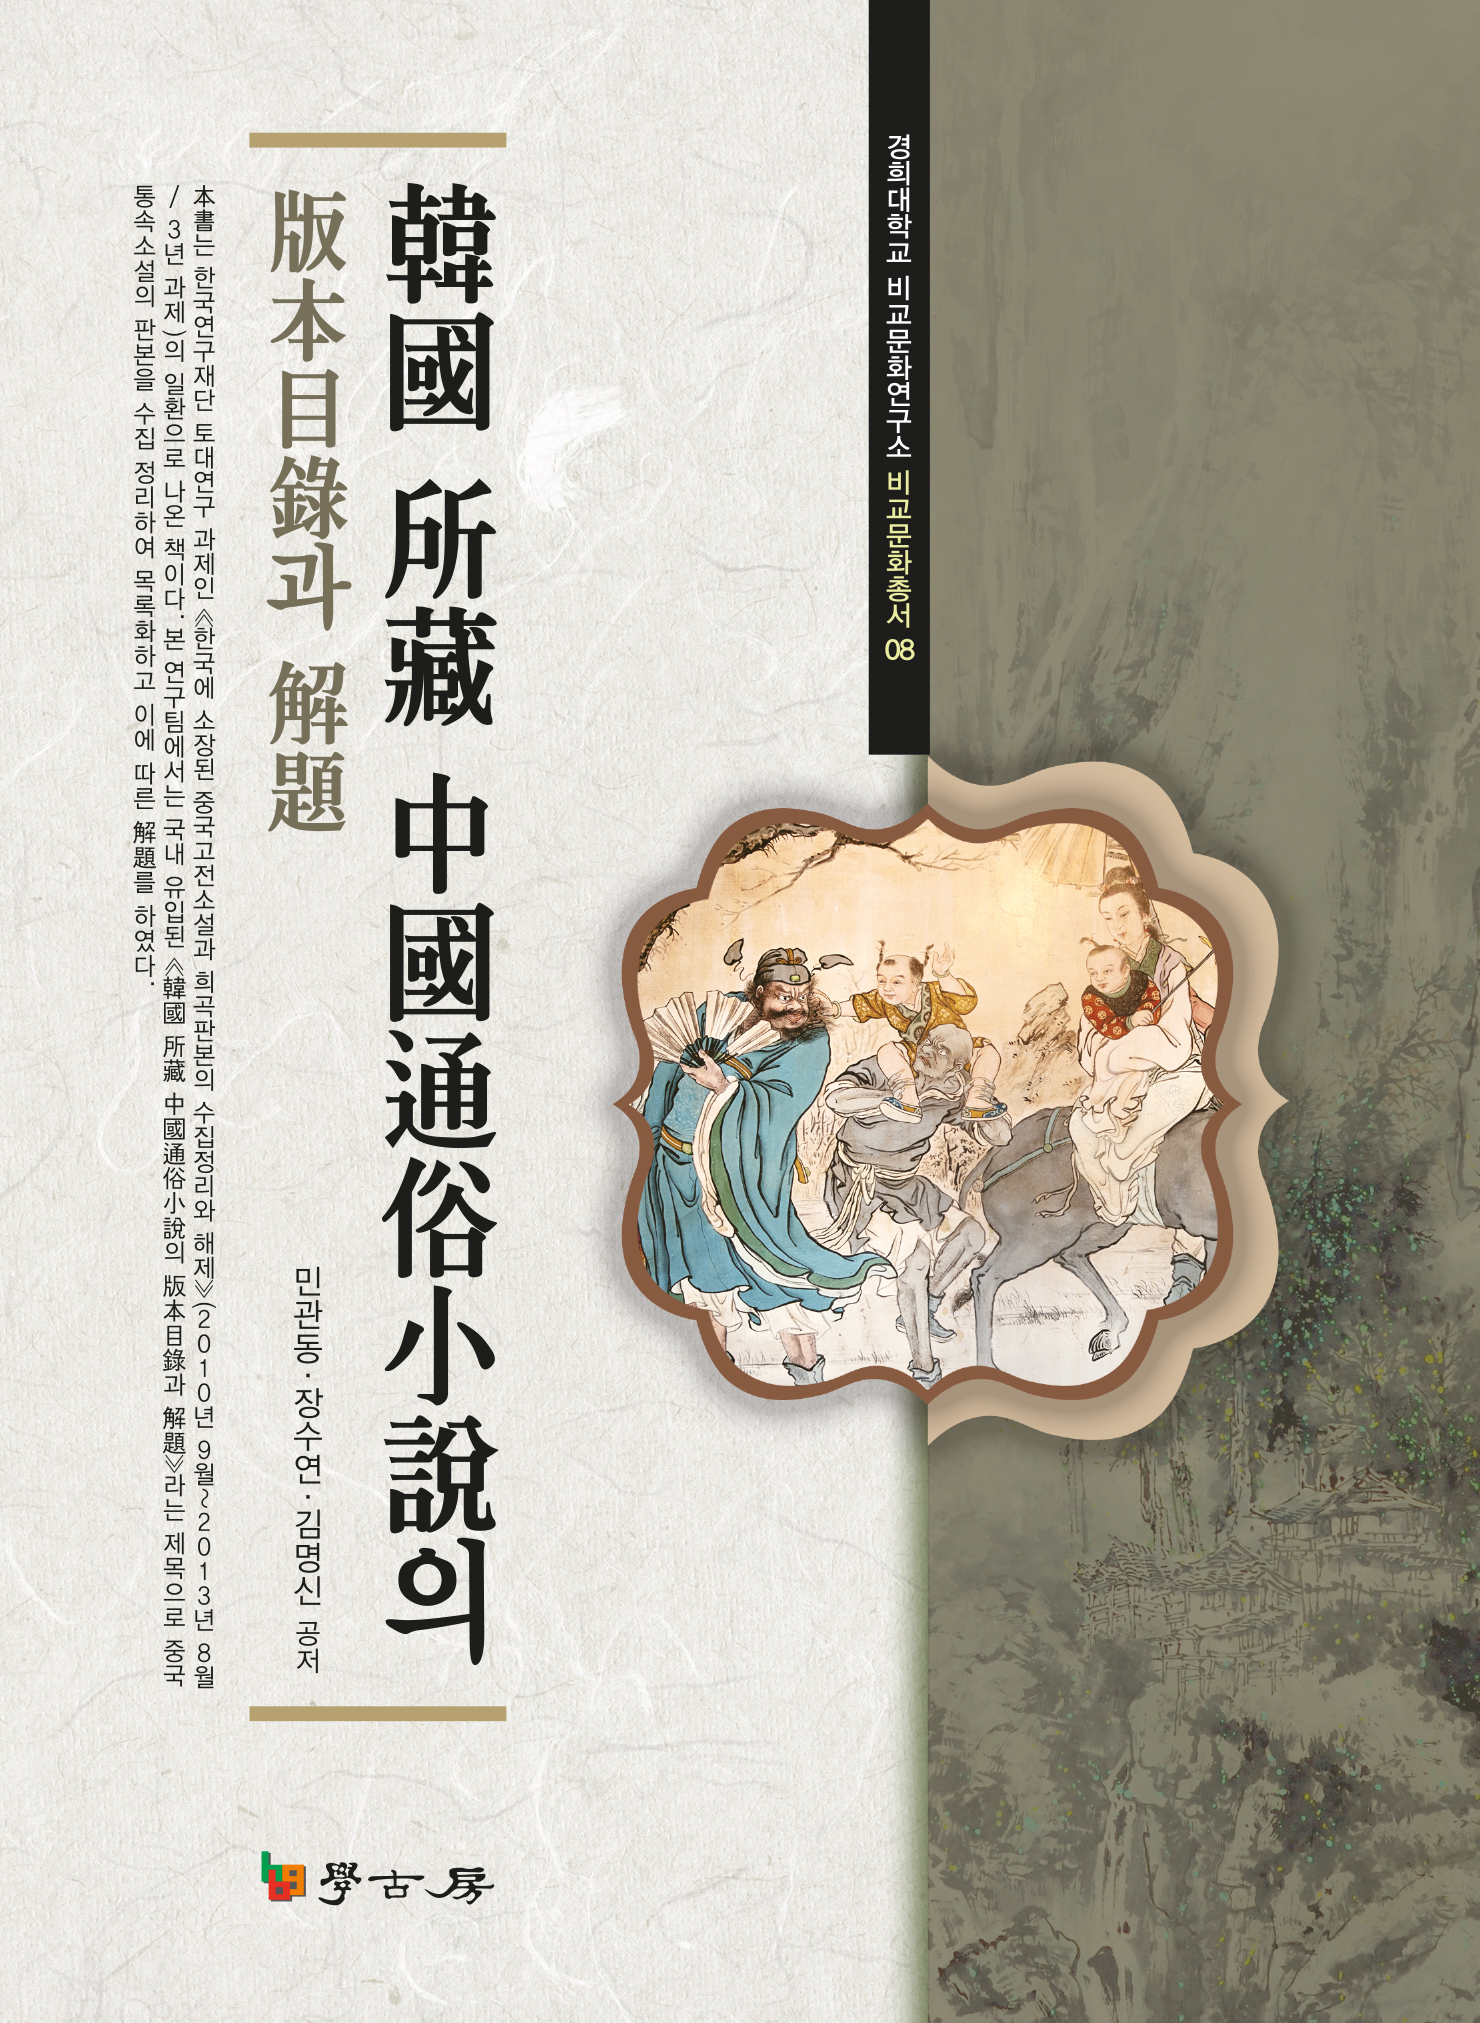 한국 소장 중국통속소설의 판본목록과 해제